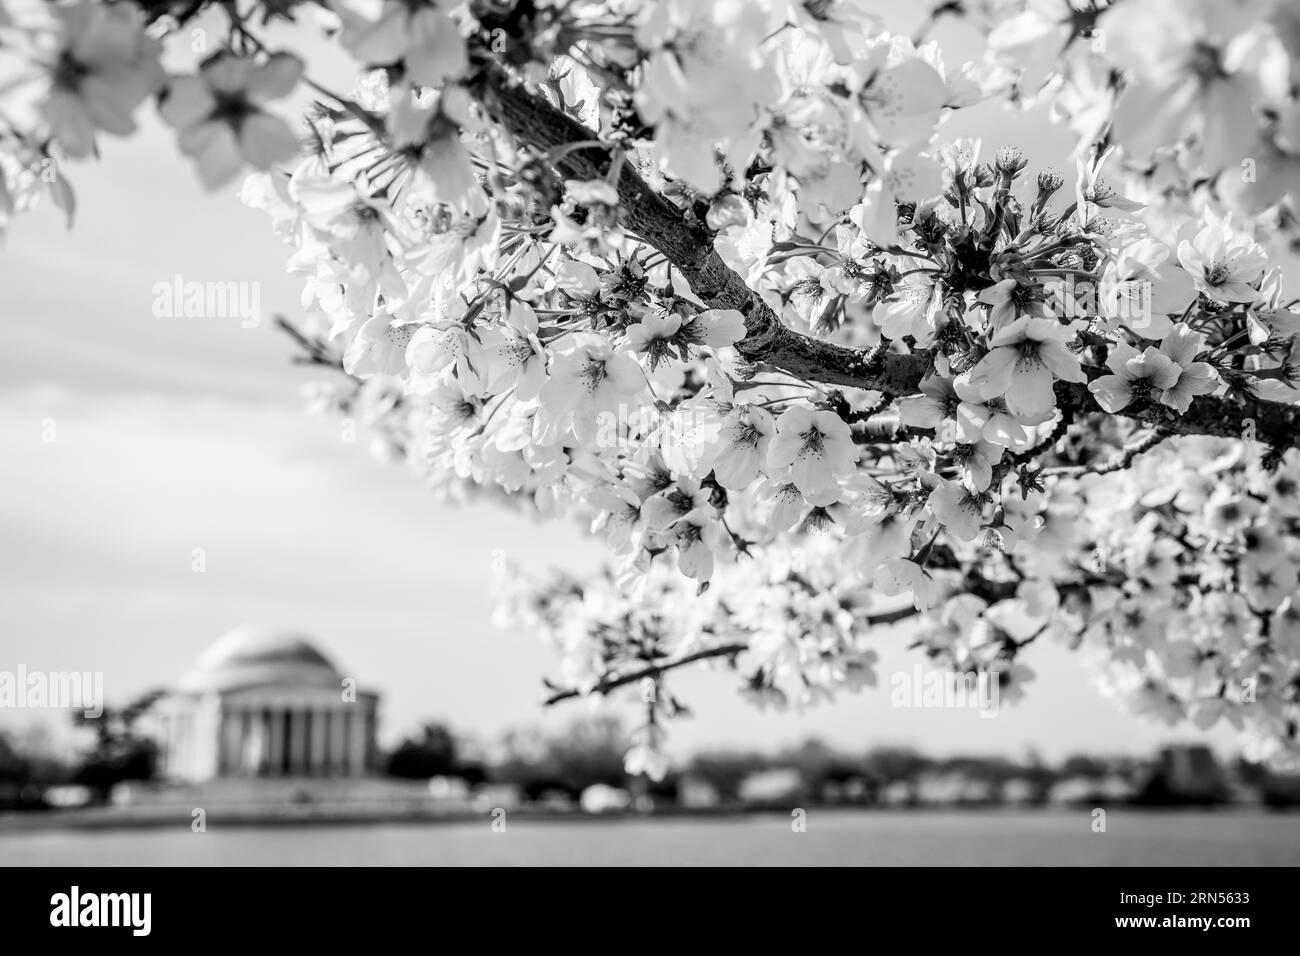 WASHINGTON DC, États-Unis — Une photographie en noir et blanc des célèbres cerisiers en fleurs de Washington DC. Chaque printemps, les cerisiers en fleurs en pleine floraison enveloppent le bassin Tidal, marquant le début du printemps dans la capitale nationale. Cet événement annuel attire des milliers de personnes, symbolisant l'amitié durable entre les États-Unis et le Japon, un cadeau de Tokyo en 1912. Banque D'Images